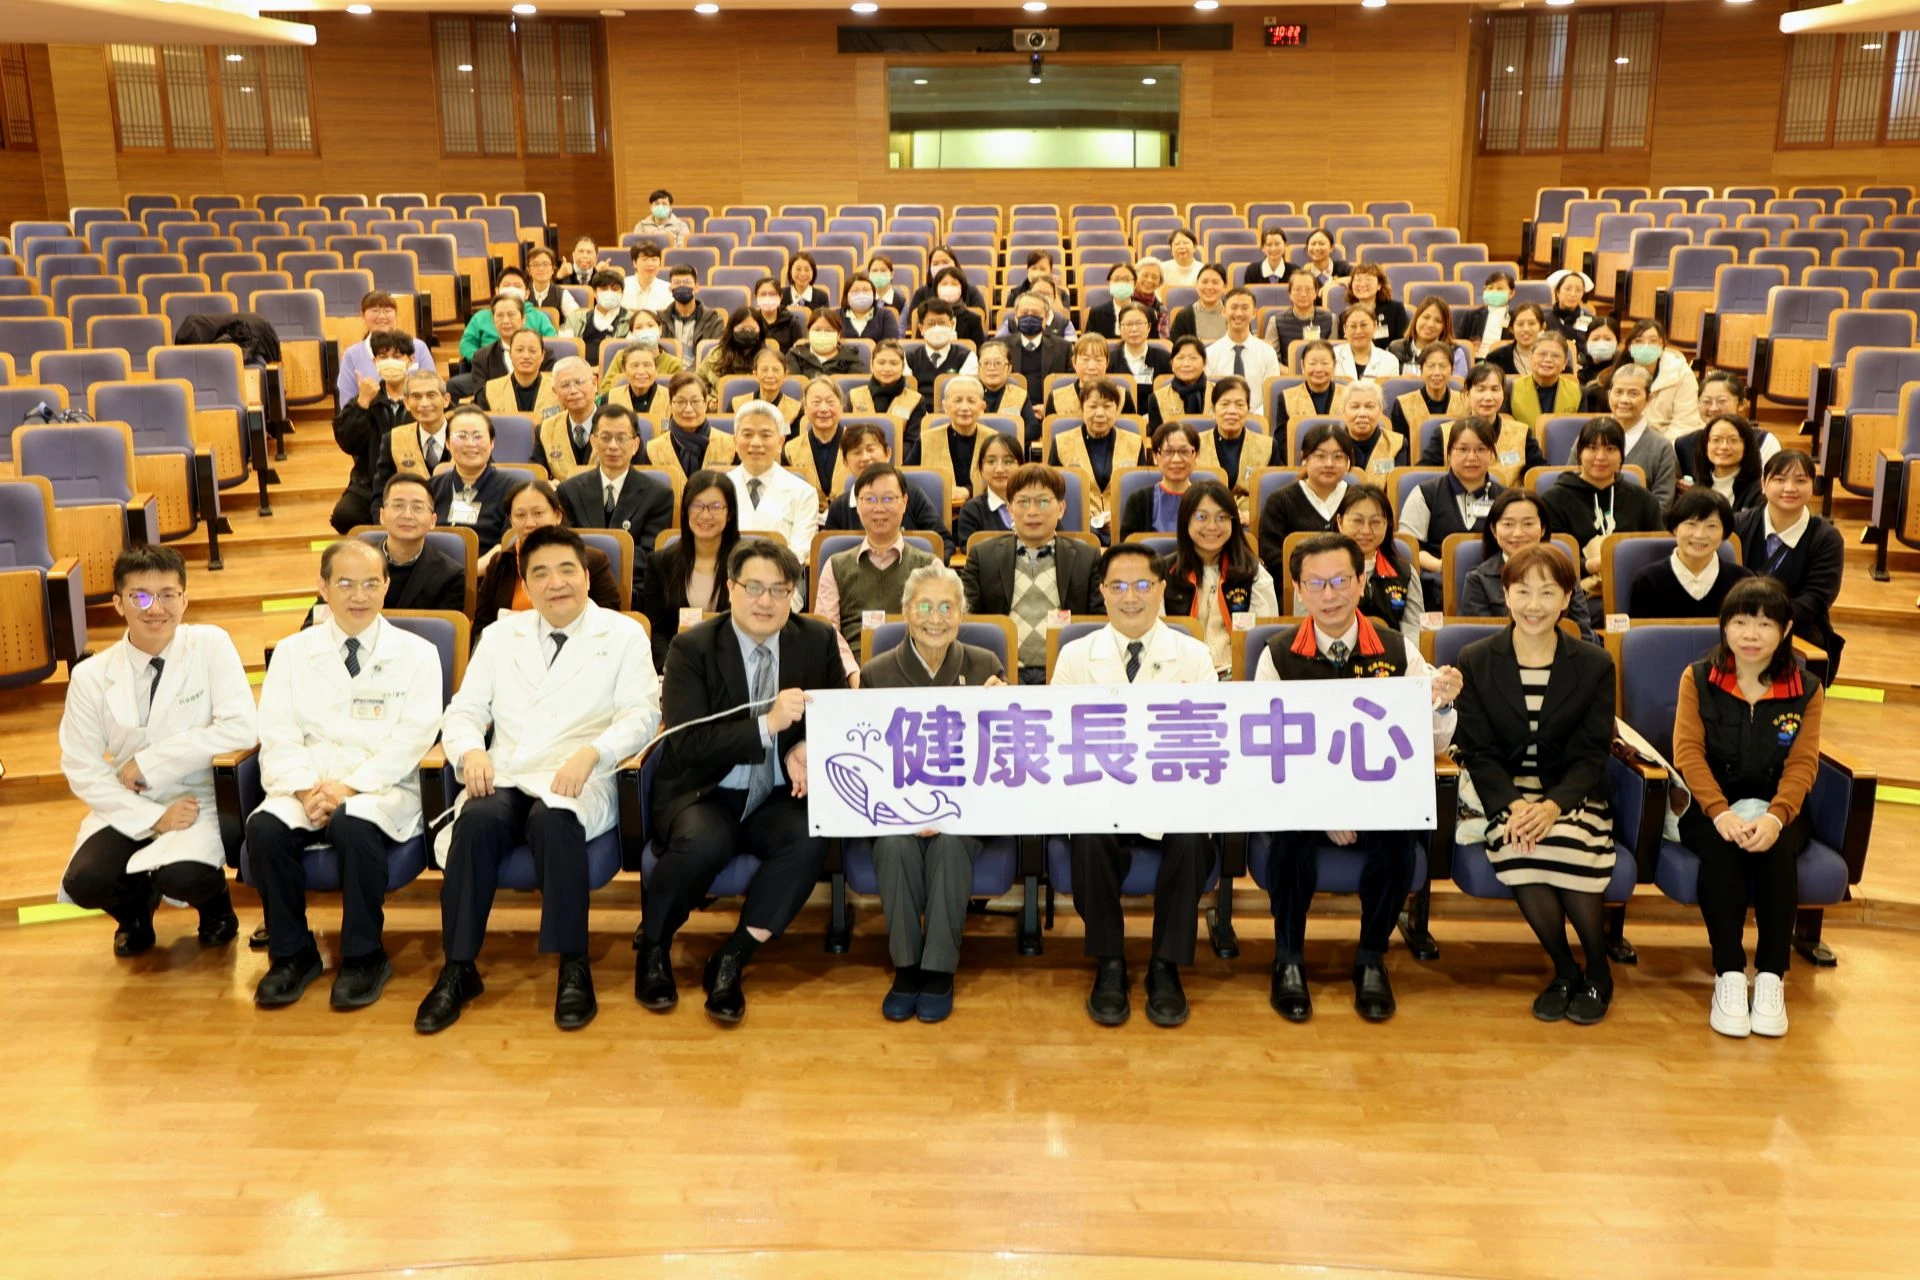 花蓮慈濟醫院於一月十二日舉辦「健康長壽中心」啟動儀式。